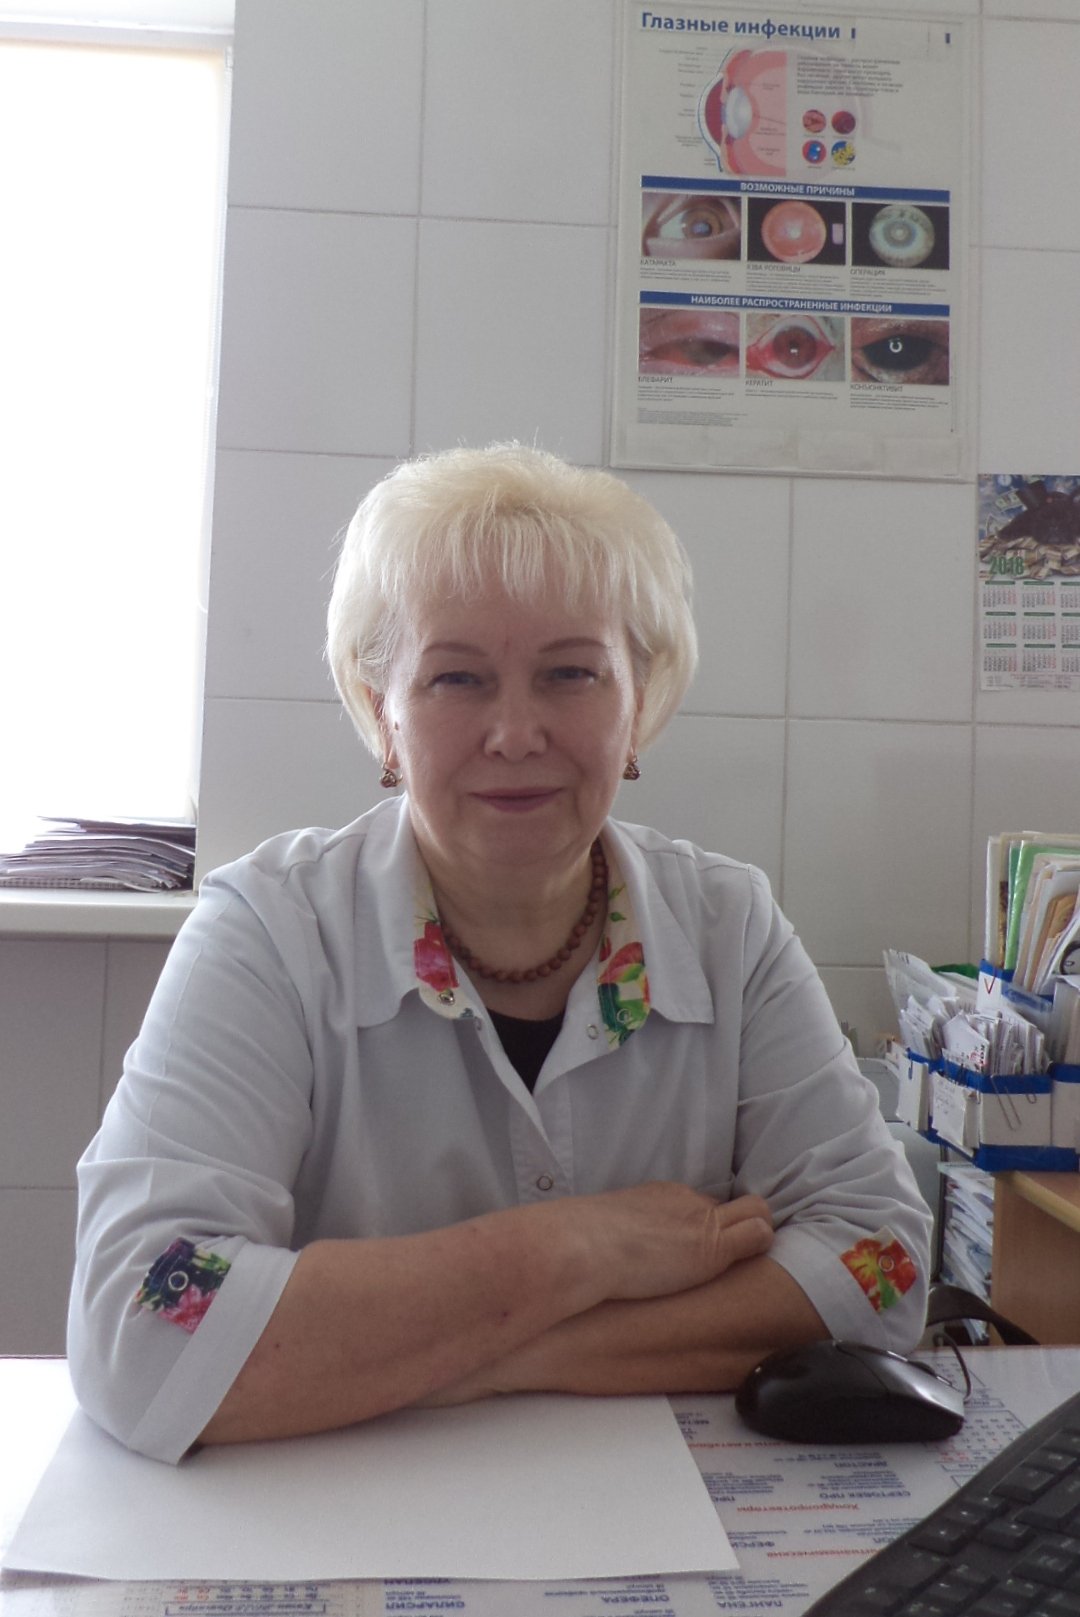  Гашева Наталья Васильевна — офтальмолог дәрігер 